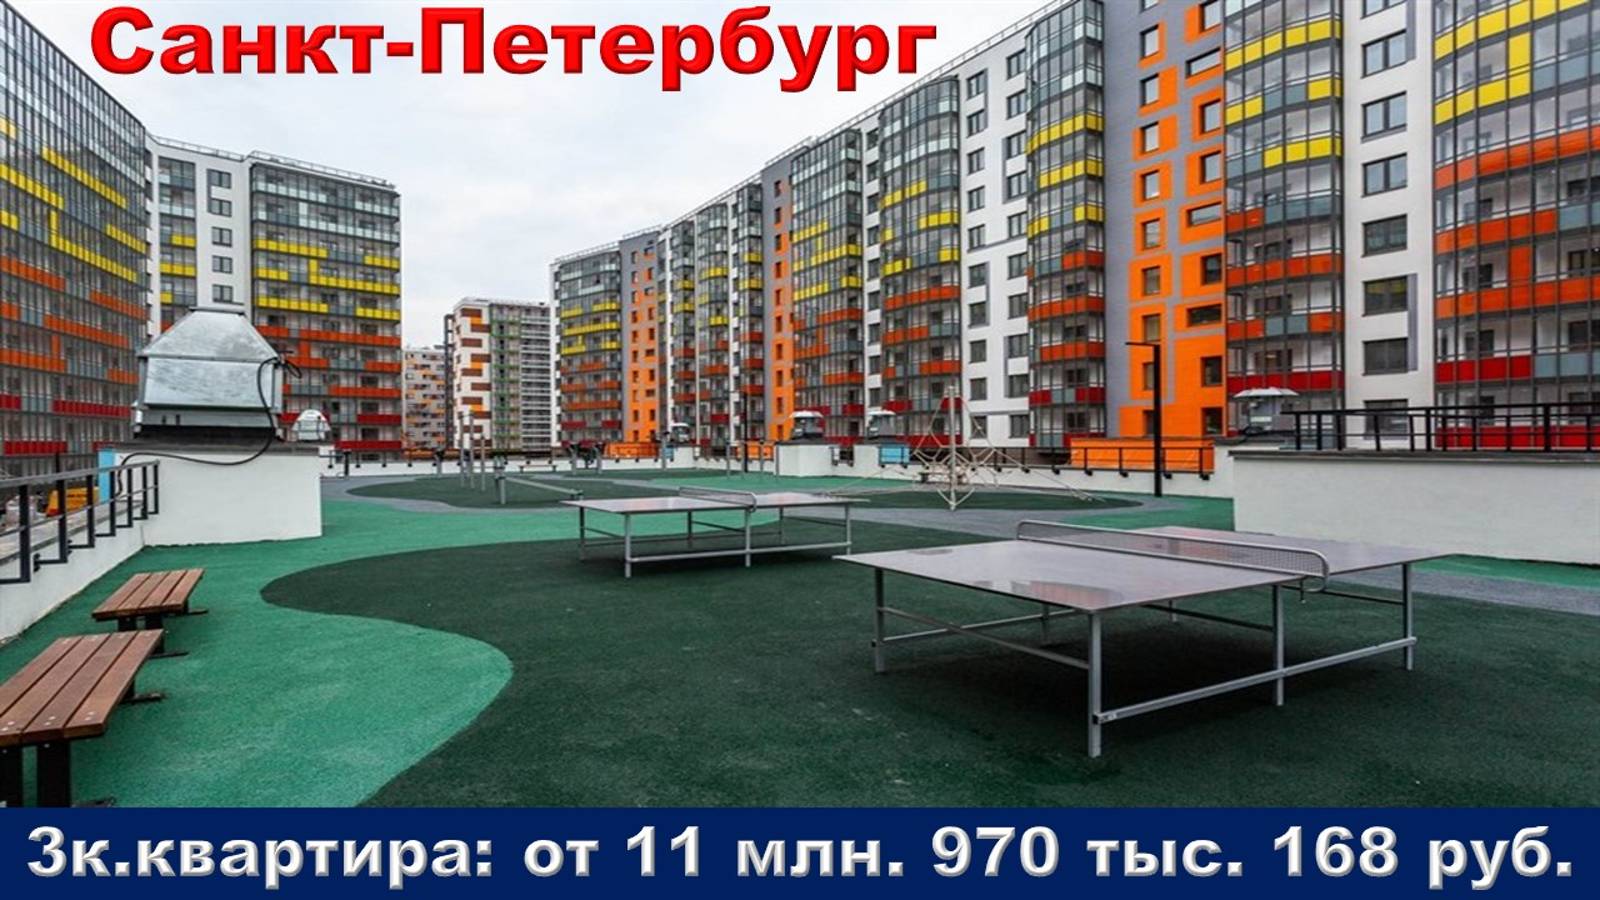 Санкт-Петербург. 3к. квартира от 11 млн. 970 тыс. 168 руб.